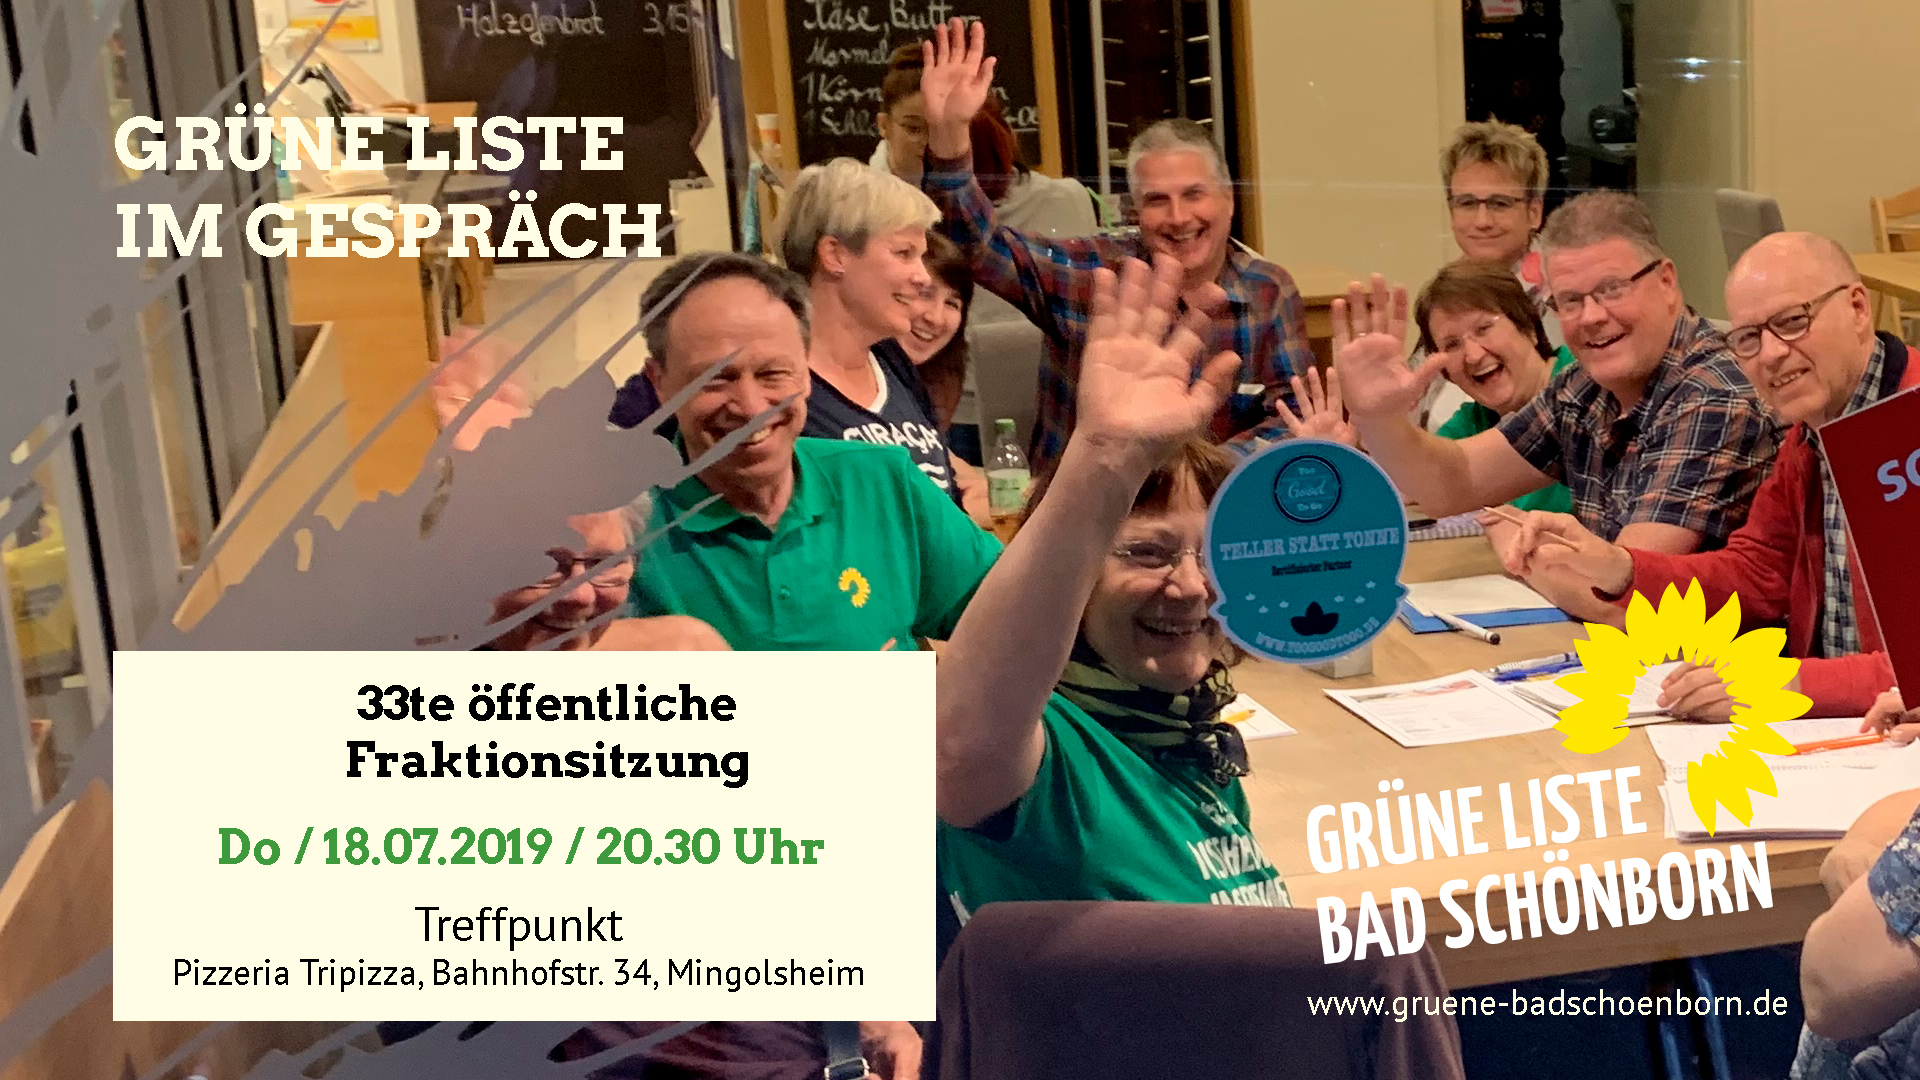 33te öffentliche Fraktionssitzung der Grünen Liste Bad Schönborn